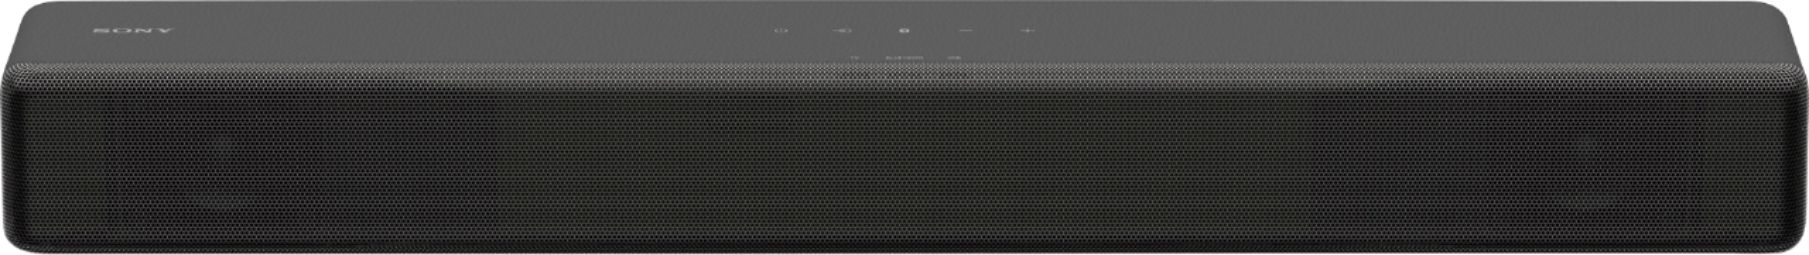 Best Buy: Sony 2.1-Channel Soundbar with Built-In Wireless 